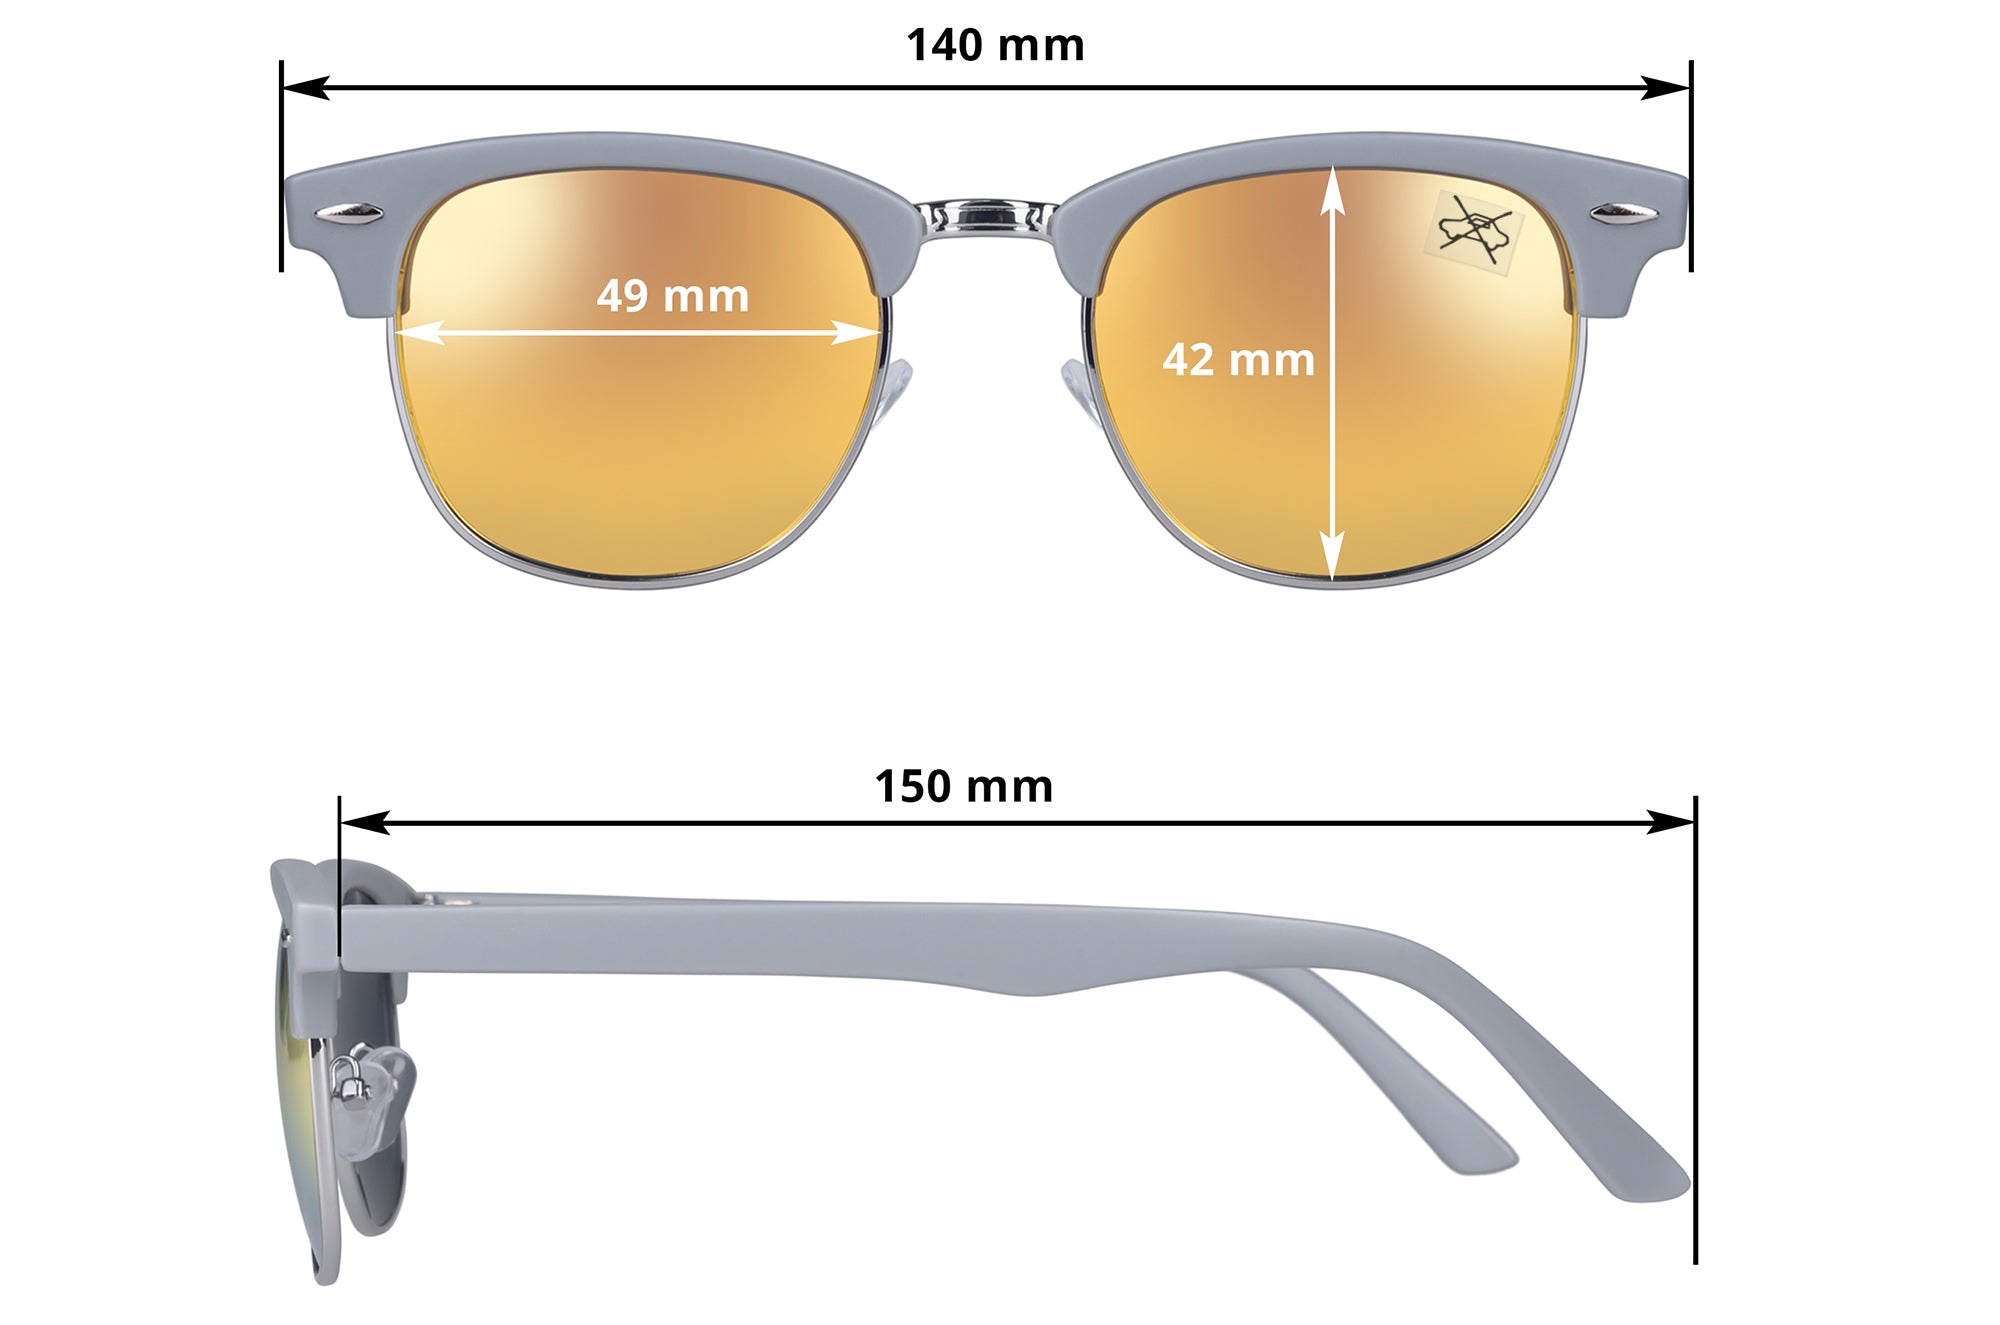 Sonnenbrille D.B. orange-gelb verspiegelt - 2er-Pack – UrbanSky | Sonnenbrillen